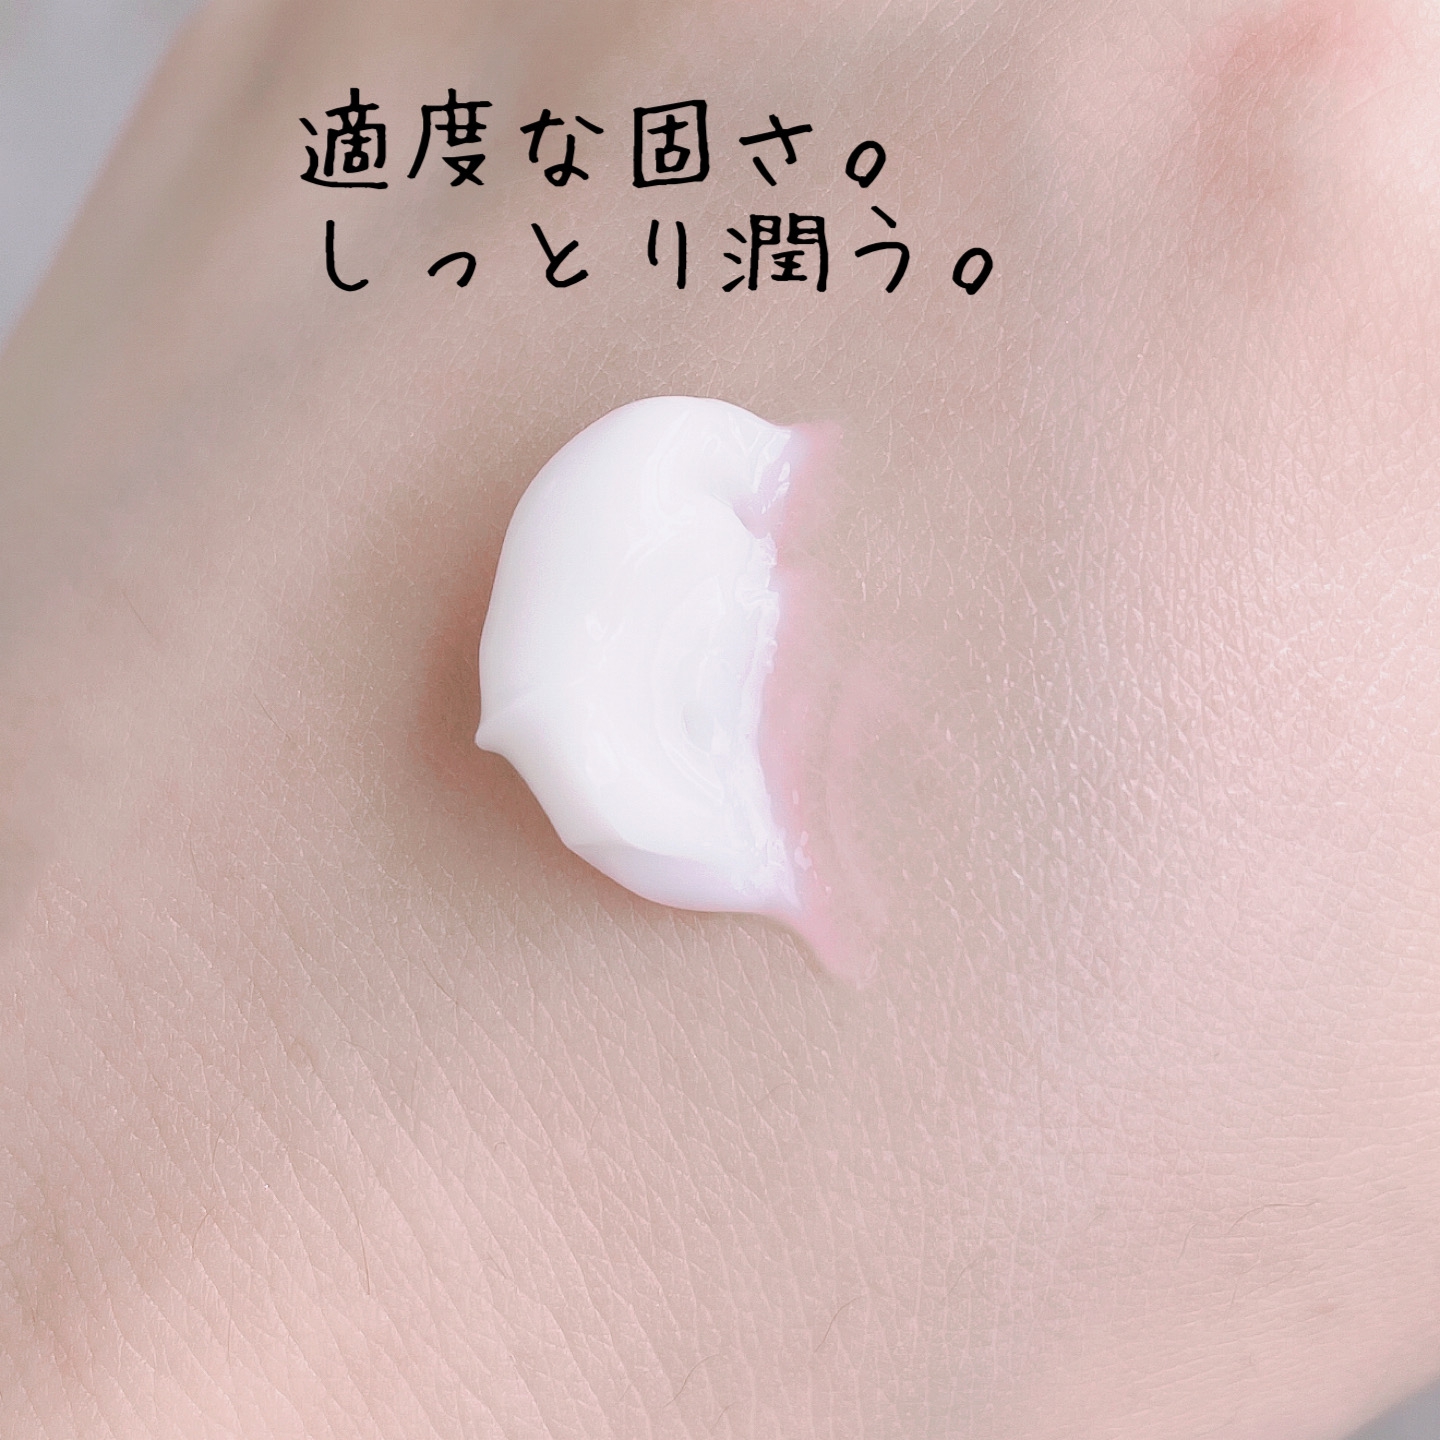 shimaboshi(シマボシ) ラスターリッチクリームの良い点・メリットに関するなゆさんの口コミ画像3